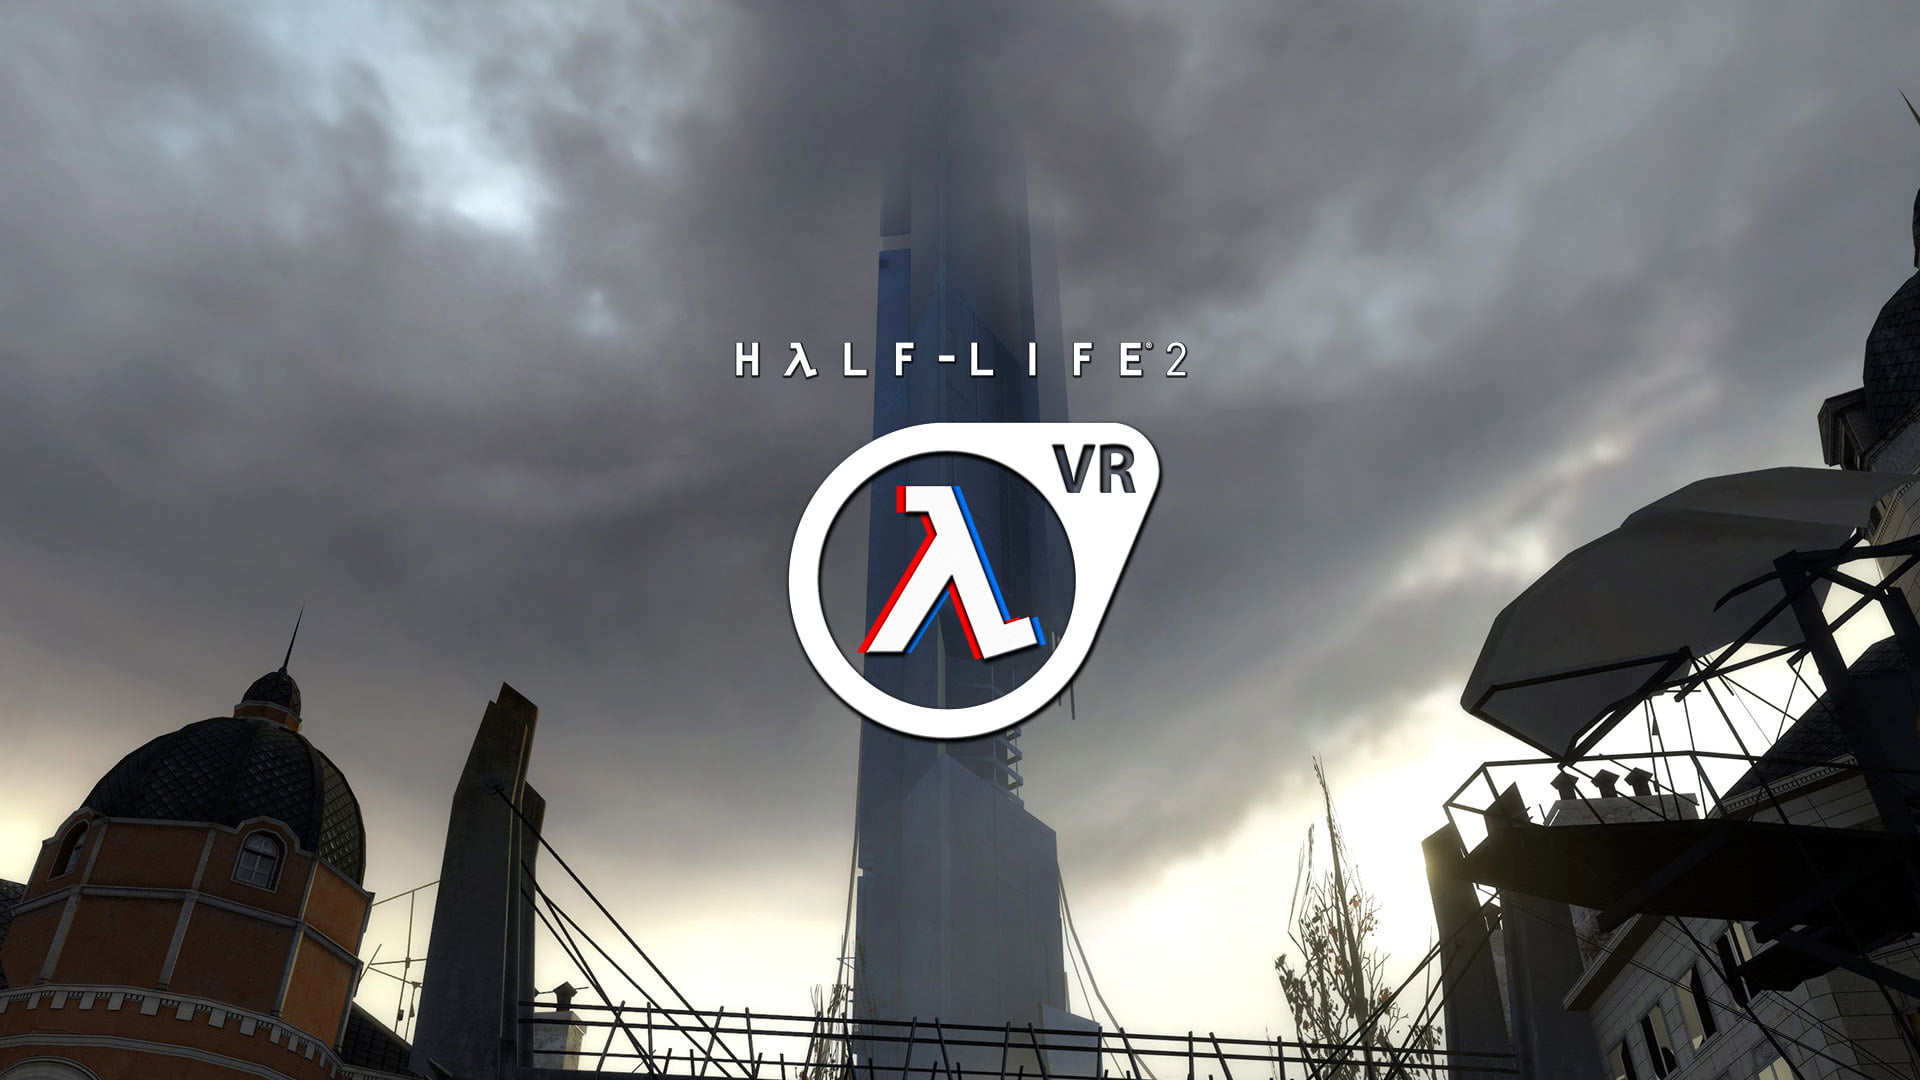 Half-Life 2 VR: Mod launcht 2022, wird Valve gezeigt